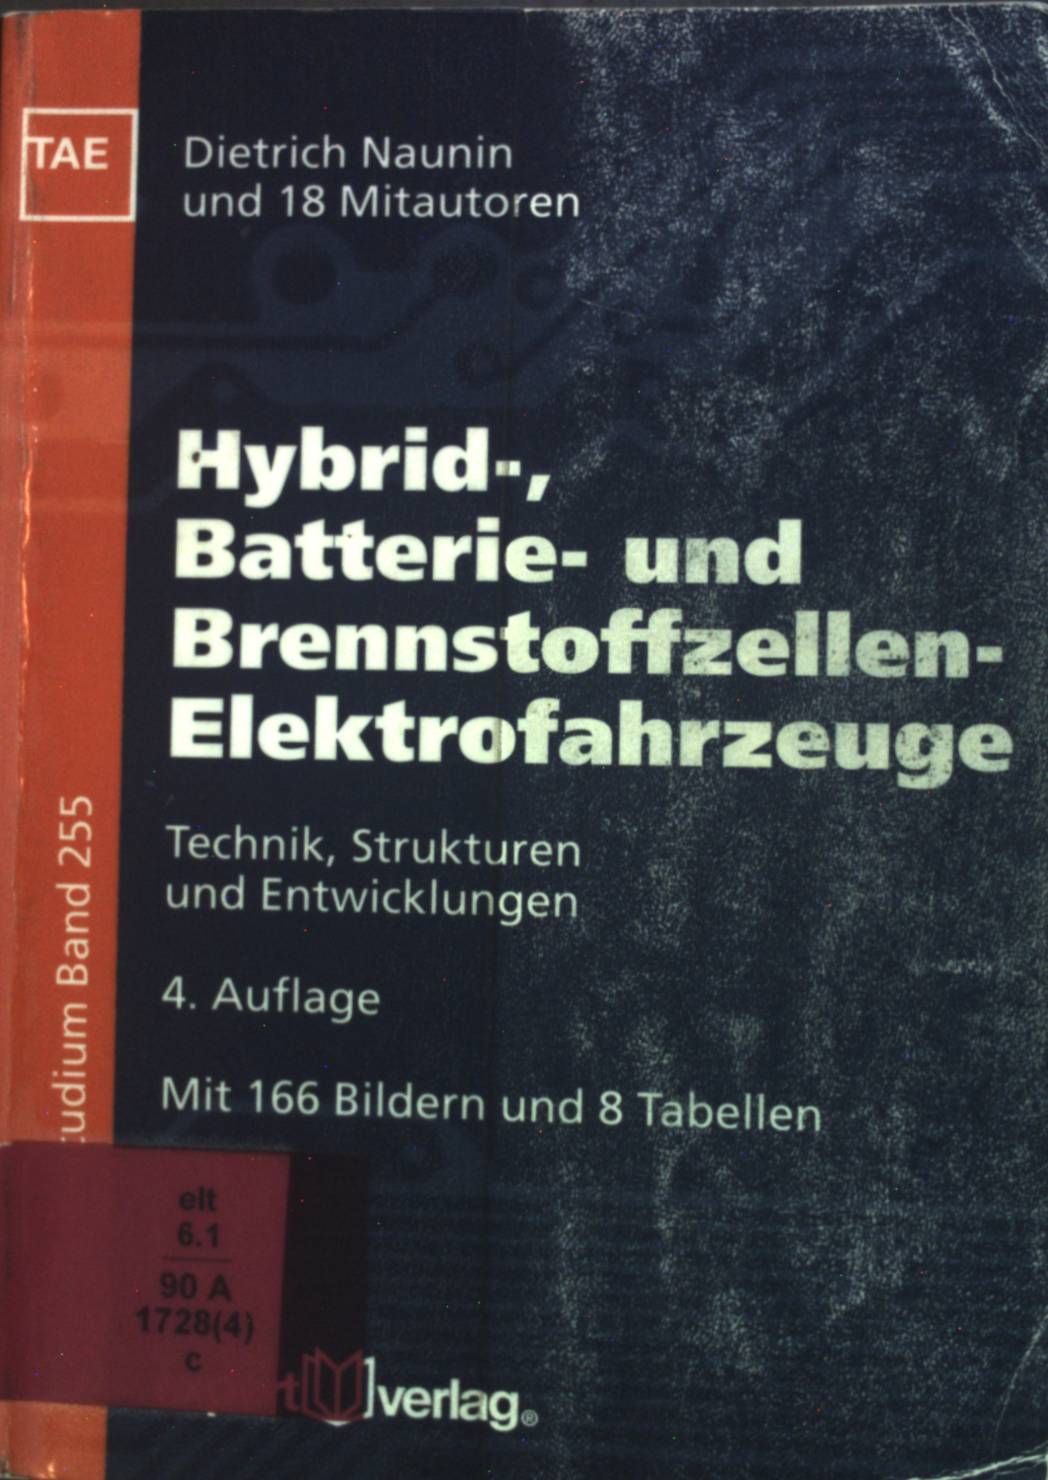 Hybrid-, Batterie- und Brennstoffzellen-Elektrofahrzeuge : Technik, Strukturen und Entwicklungen ; mit 8 Tabellen. Kontakt & Studium ; Band. 255 - Naunin, Dietrich